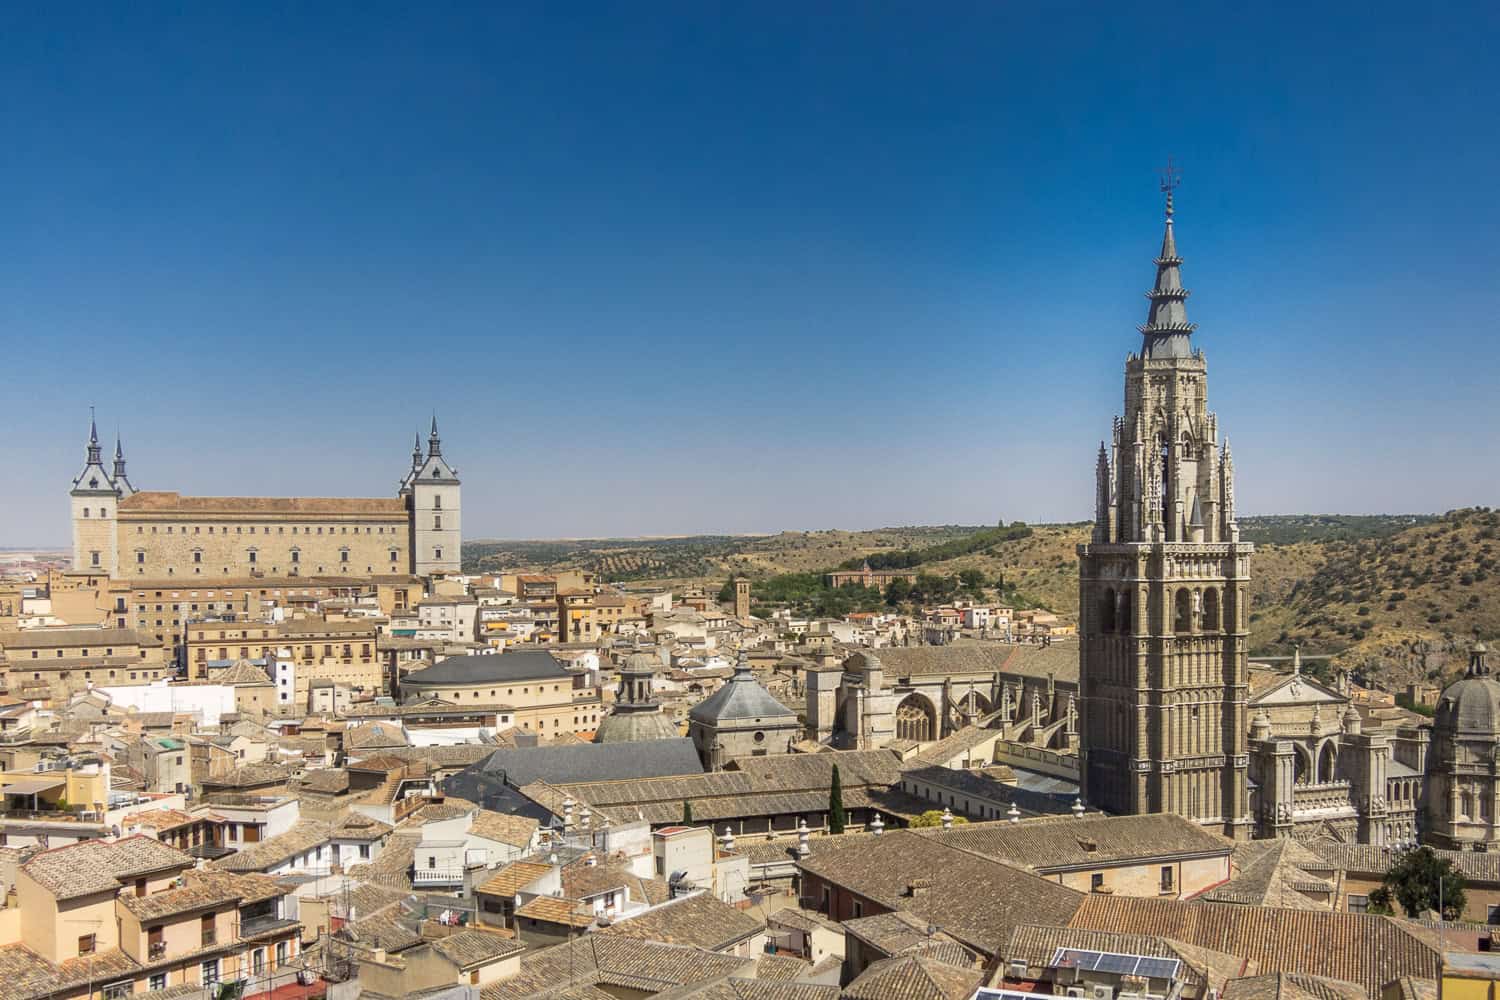 Uitzicht over Toledo, met de toren van de kathedraal en het Alcázar